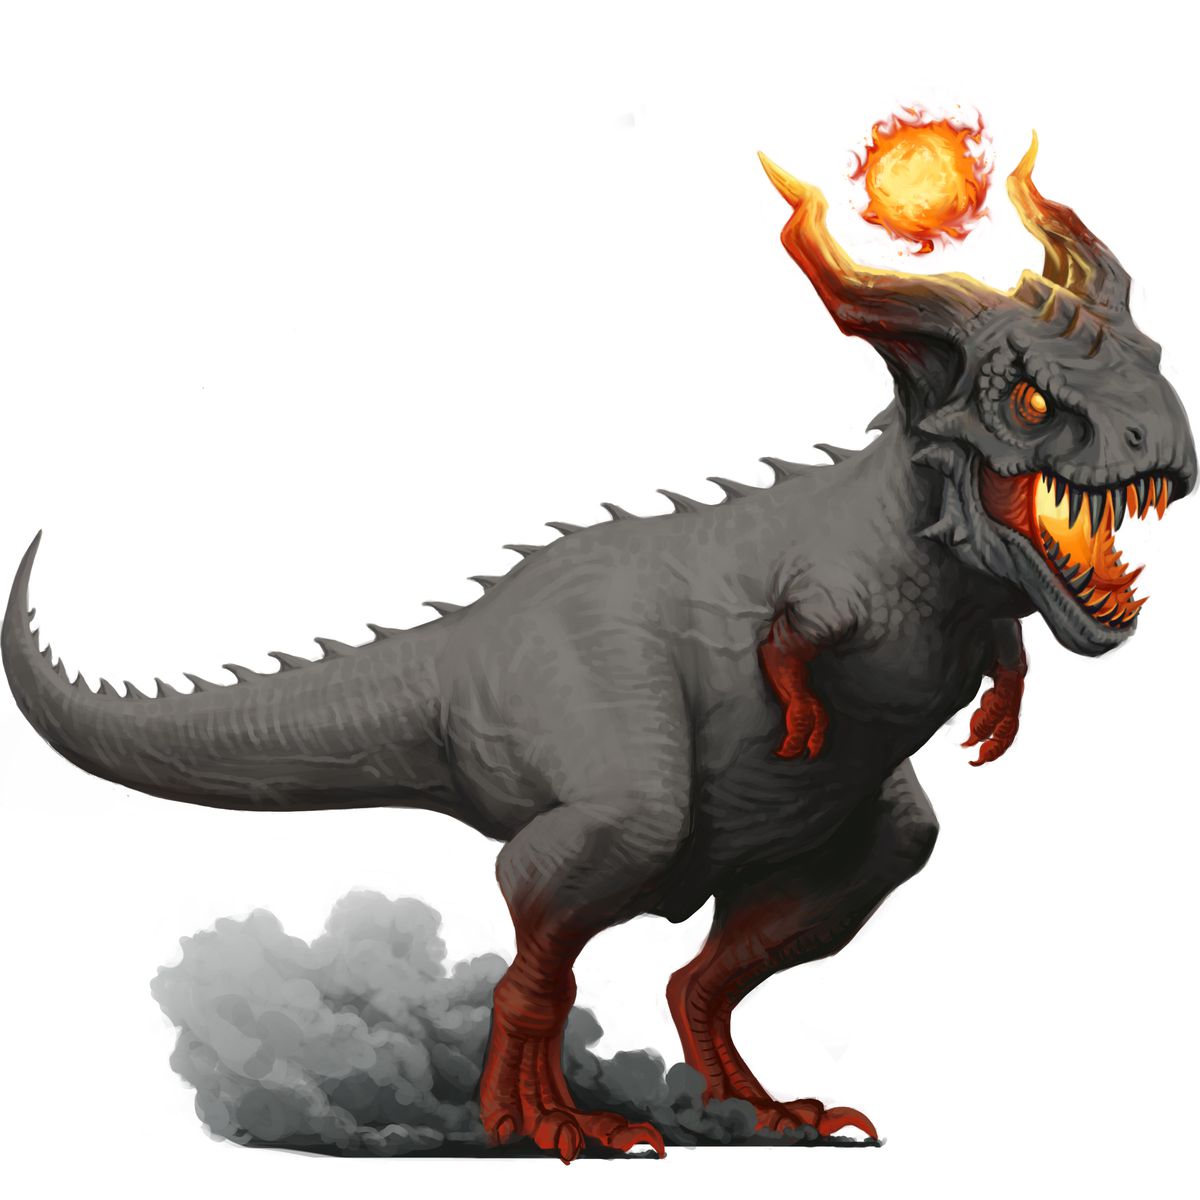 Un grand dynosaure gris en forme à peu près comme un t-rex, mais avec des cornes et une boule de feu au-dessus de la tête.